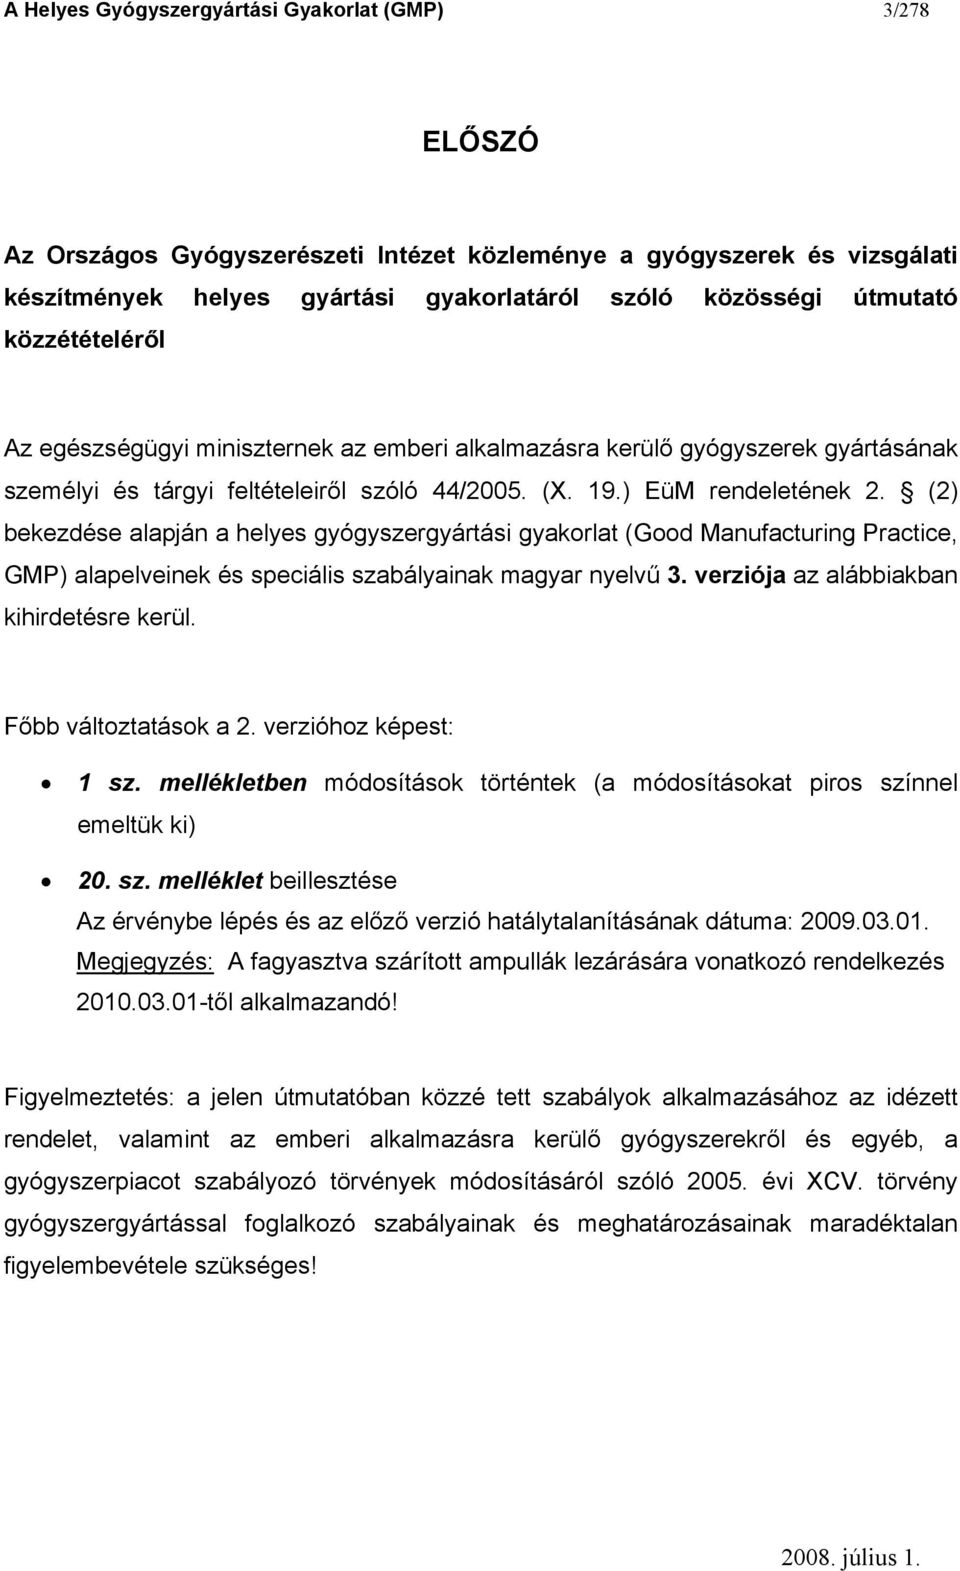 (2) bekezdése alapján a helyes gyógyszergyártási gyakorlat (Good Manufacturing Practice, GMP) alapelveinek és speciális szabályainak magyar nyelvű 3. verziója az alábbiakban kihirdetésre kerül.